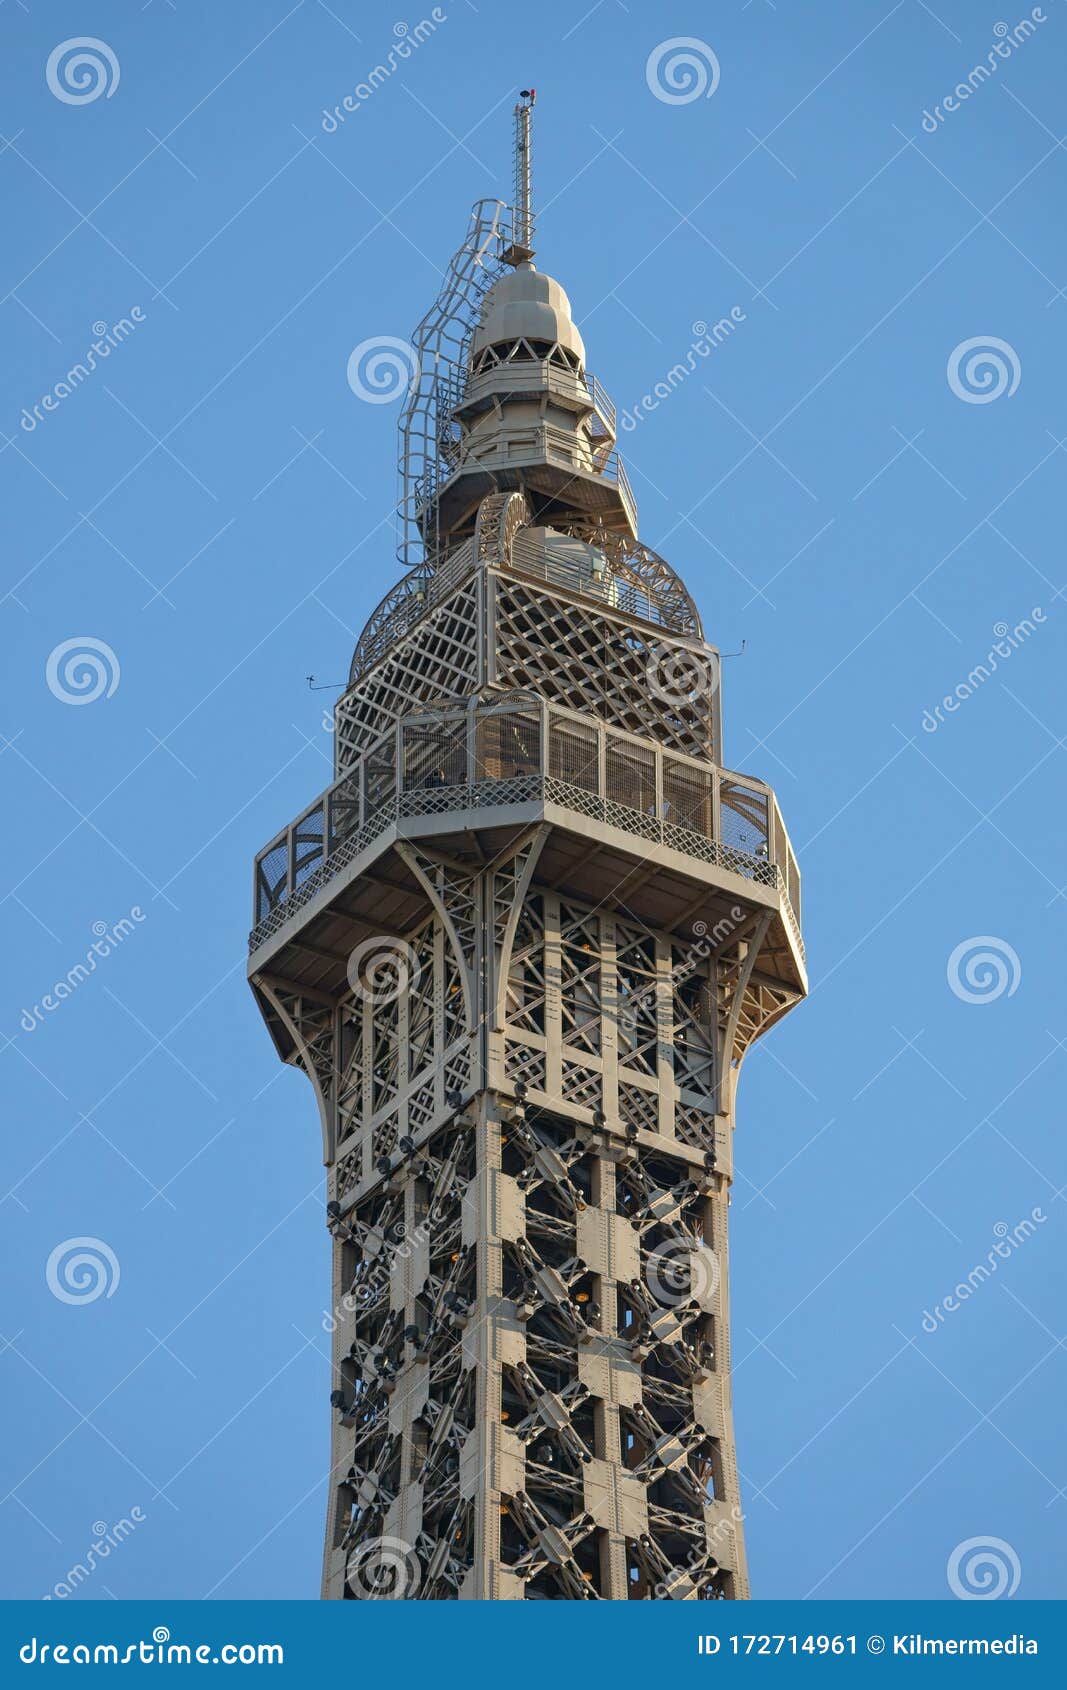 Las Vegas, Nevada, USA, - 2020: Eiffel Tower in Las Vegas. Paris